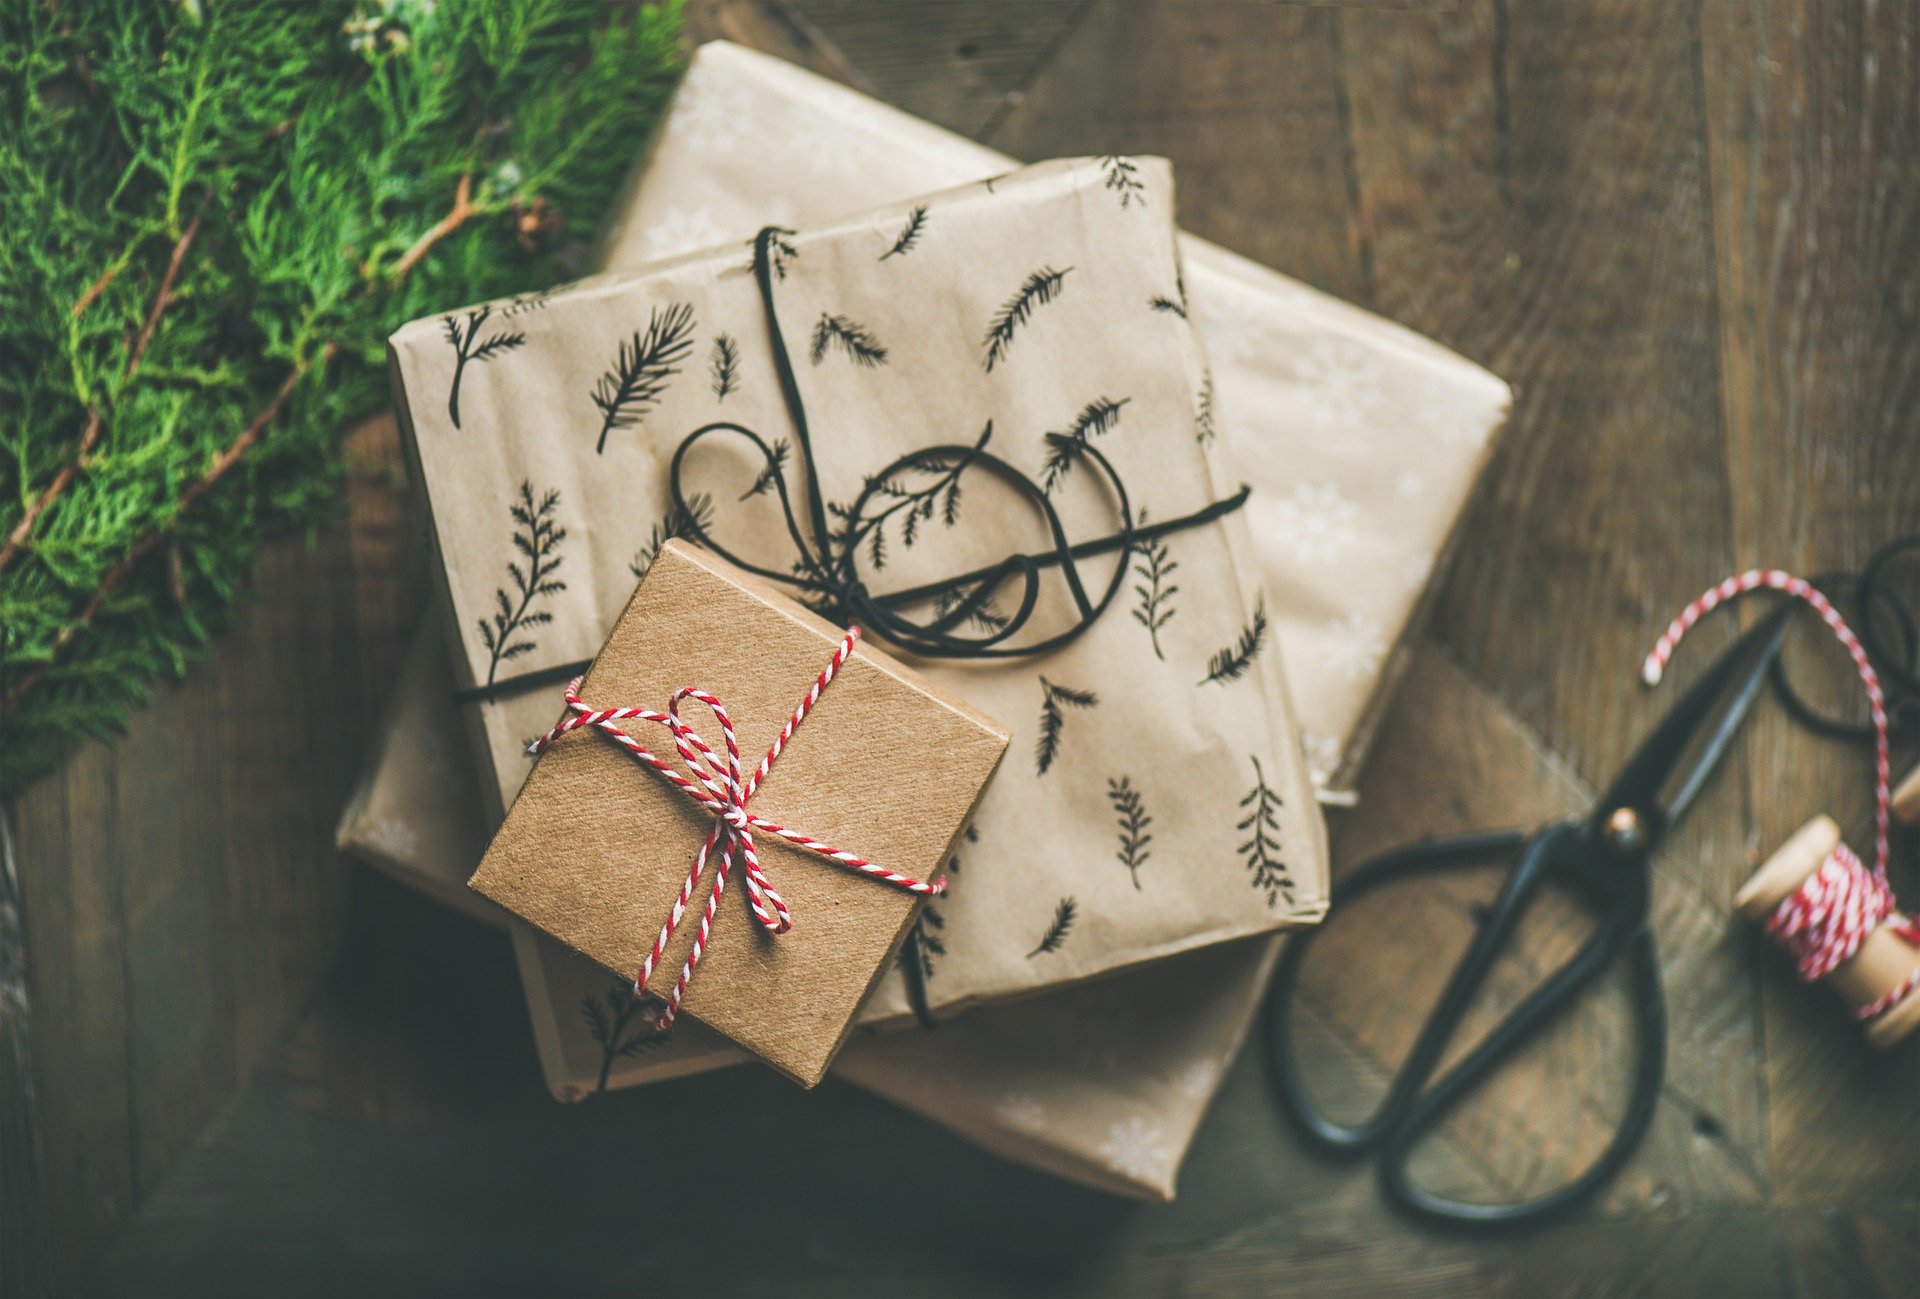 איך לרכוש מתנות לחג באופן מושכל וחסכוני?